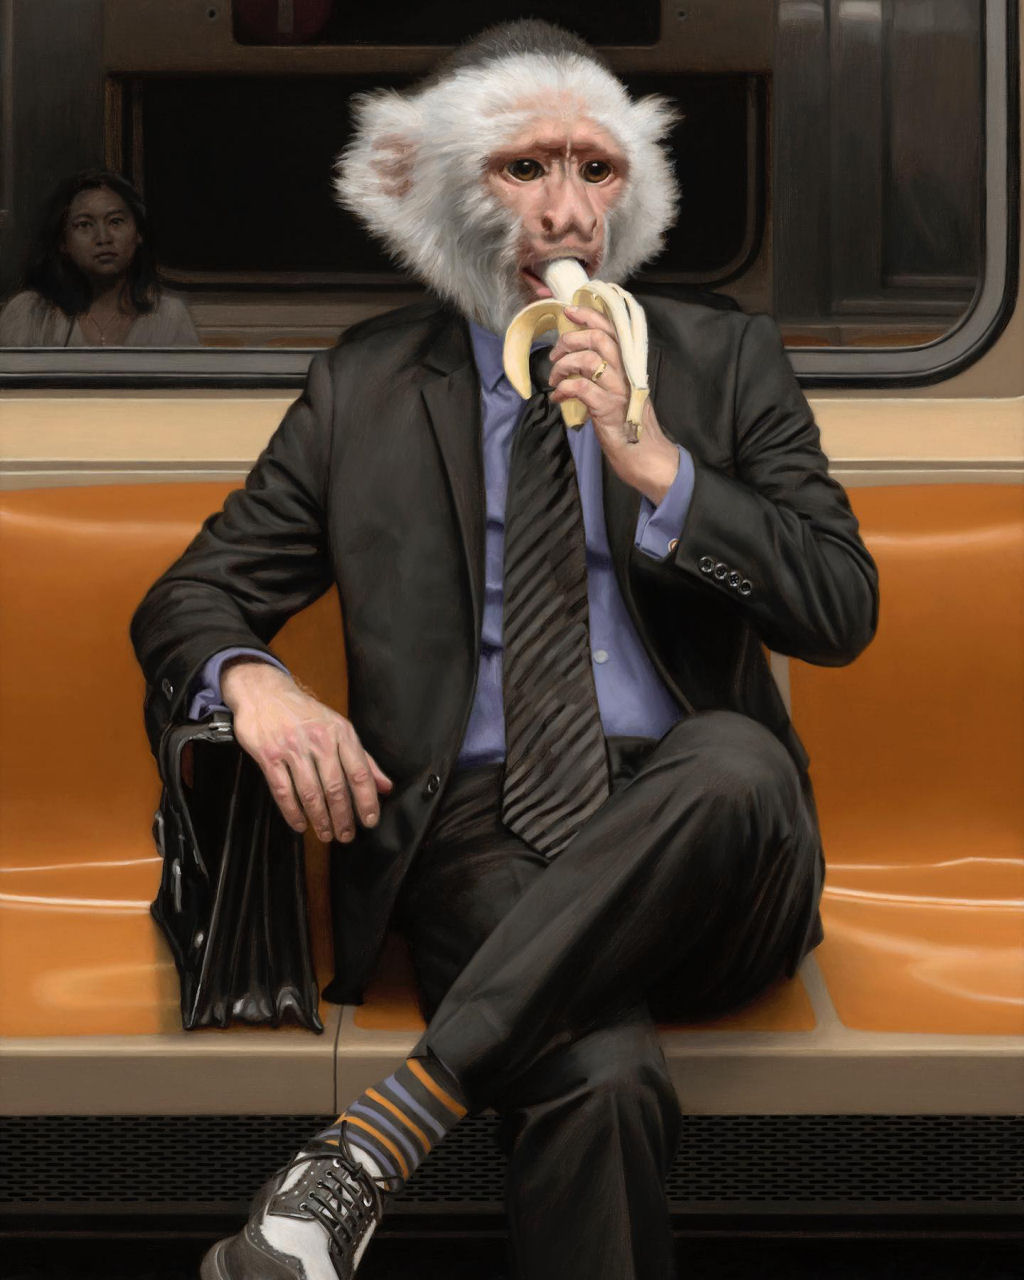 Estas pinturas surreais mostram 'viagens animais' pelo metr de Nova York 05